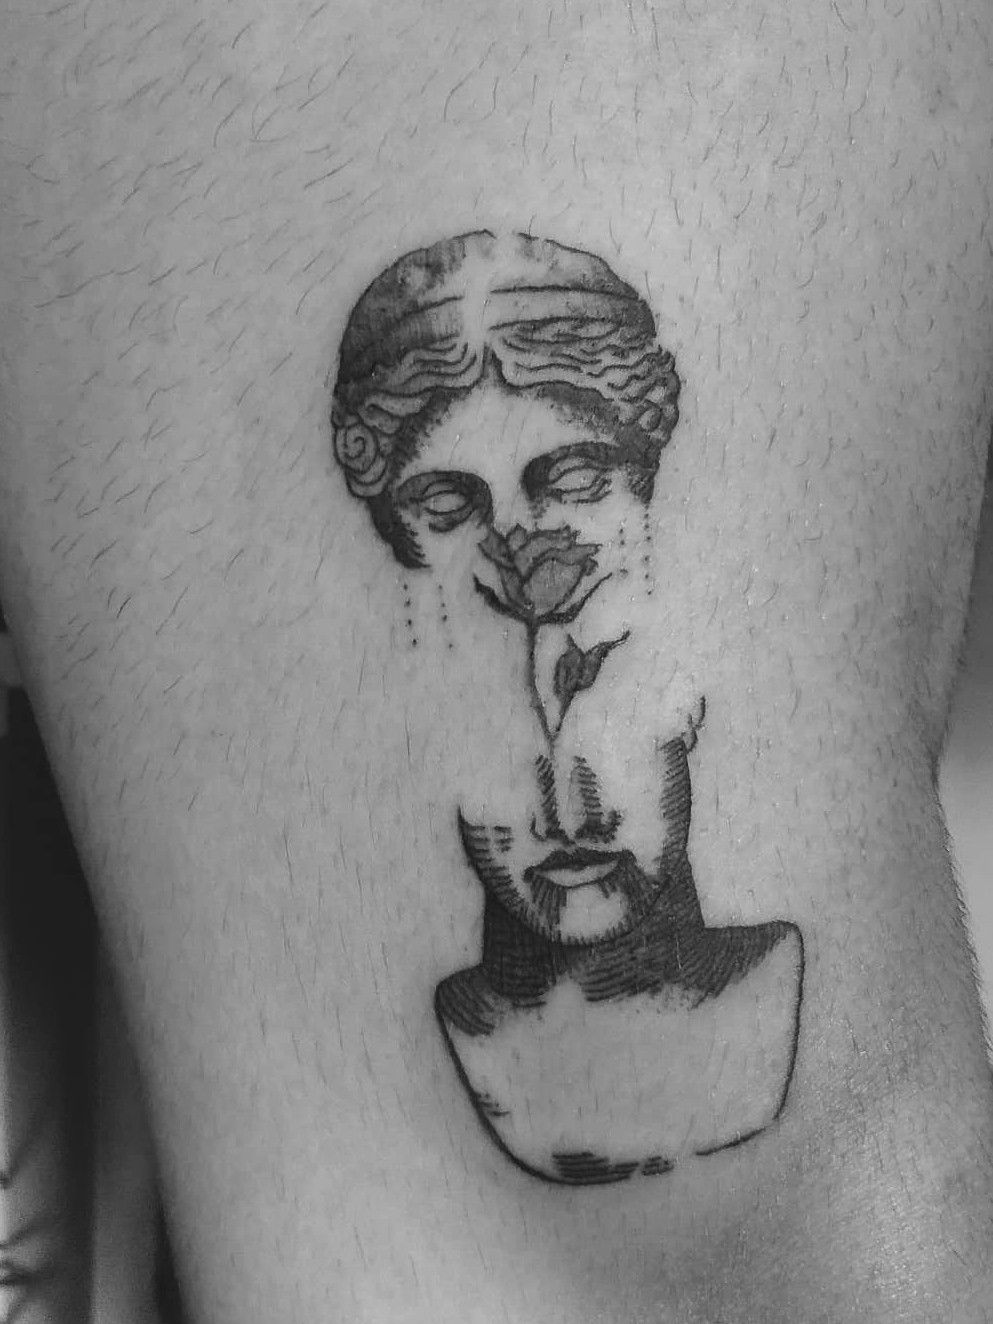 Pin by 𝓼 on ink  Greek tattoos Discreet  tattoos Small tattoos